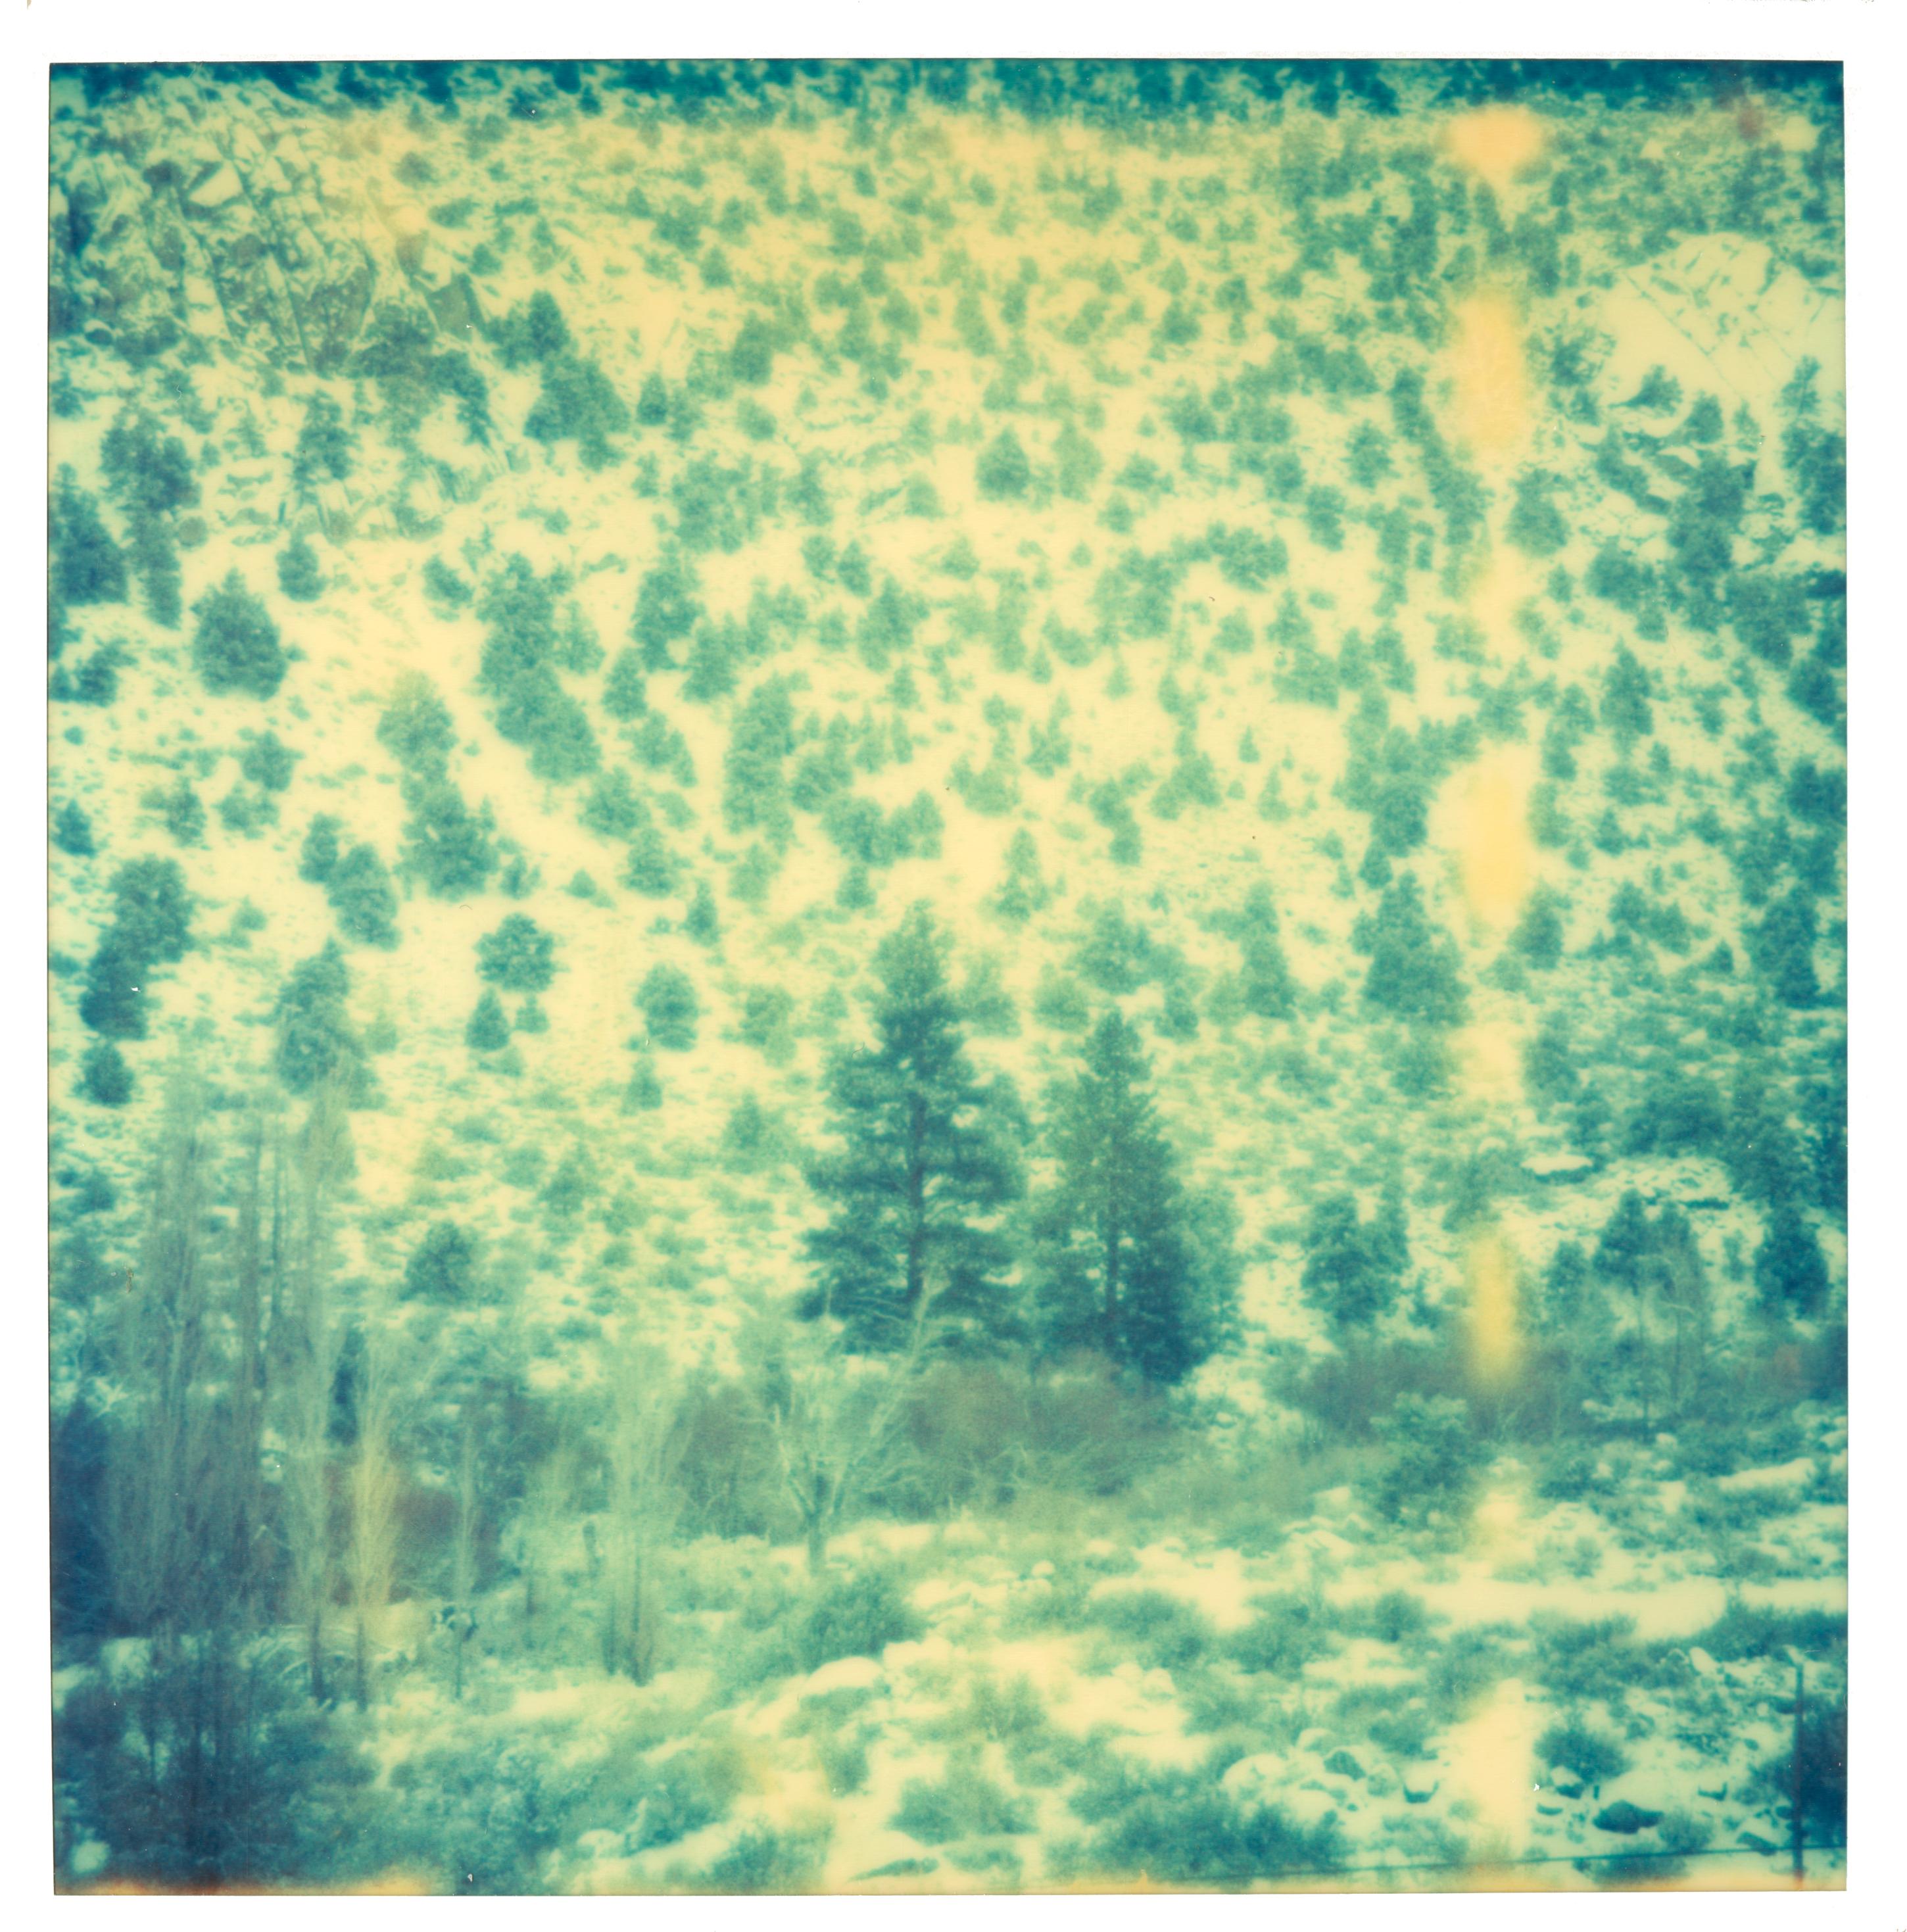 Landscape Photograph Stefanie Schneider - Magic Mountain 1 (Memories of Green) analogique, expiré, paysage